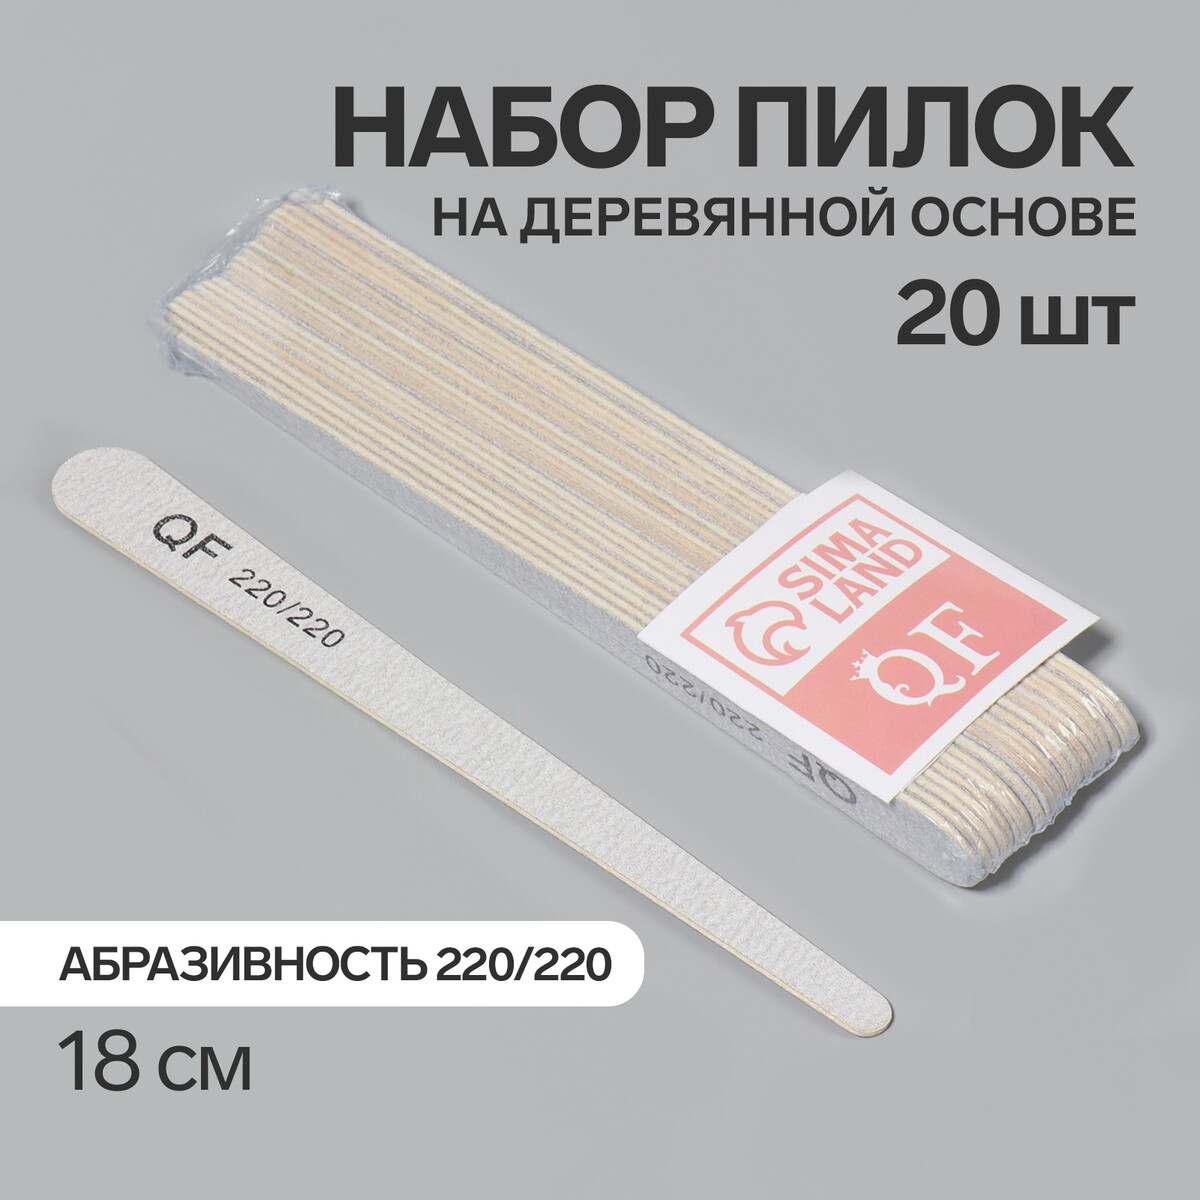 Пилка-наждак, набор 20 шт, деревянная основа, абразивность 220/220, 18 см, цвет серый палка основа для макраме деревянная без покрытия d 1 5 × 30 см